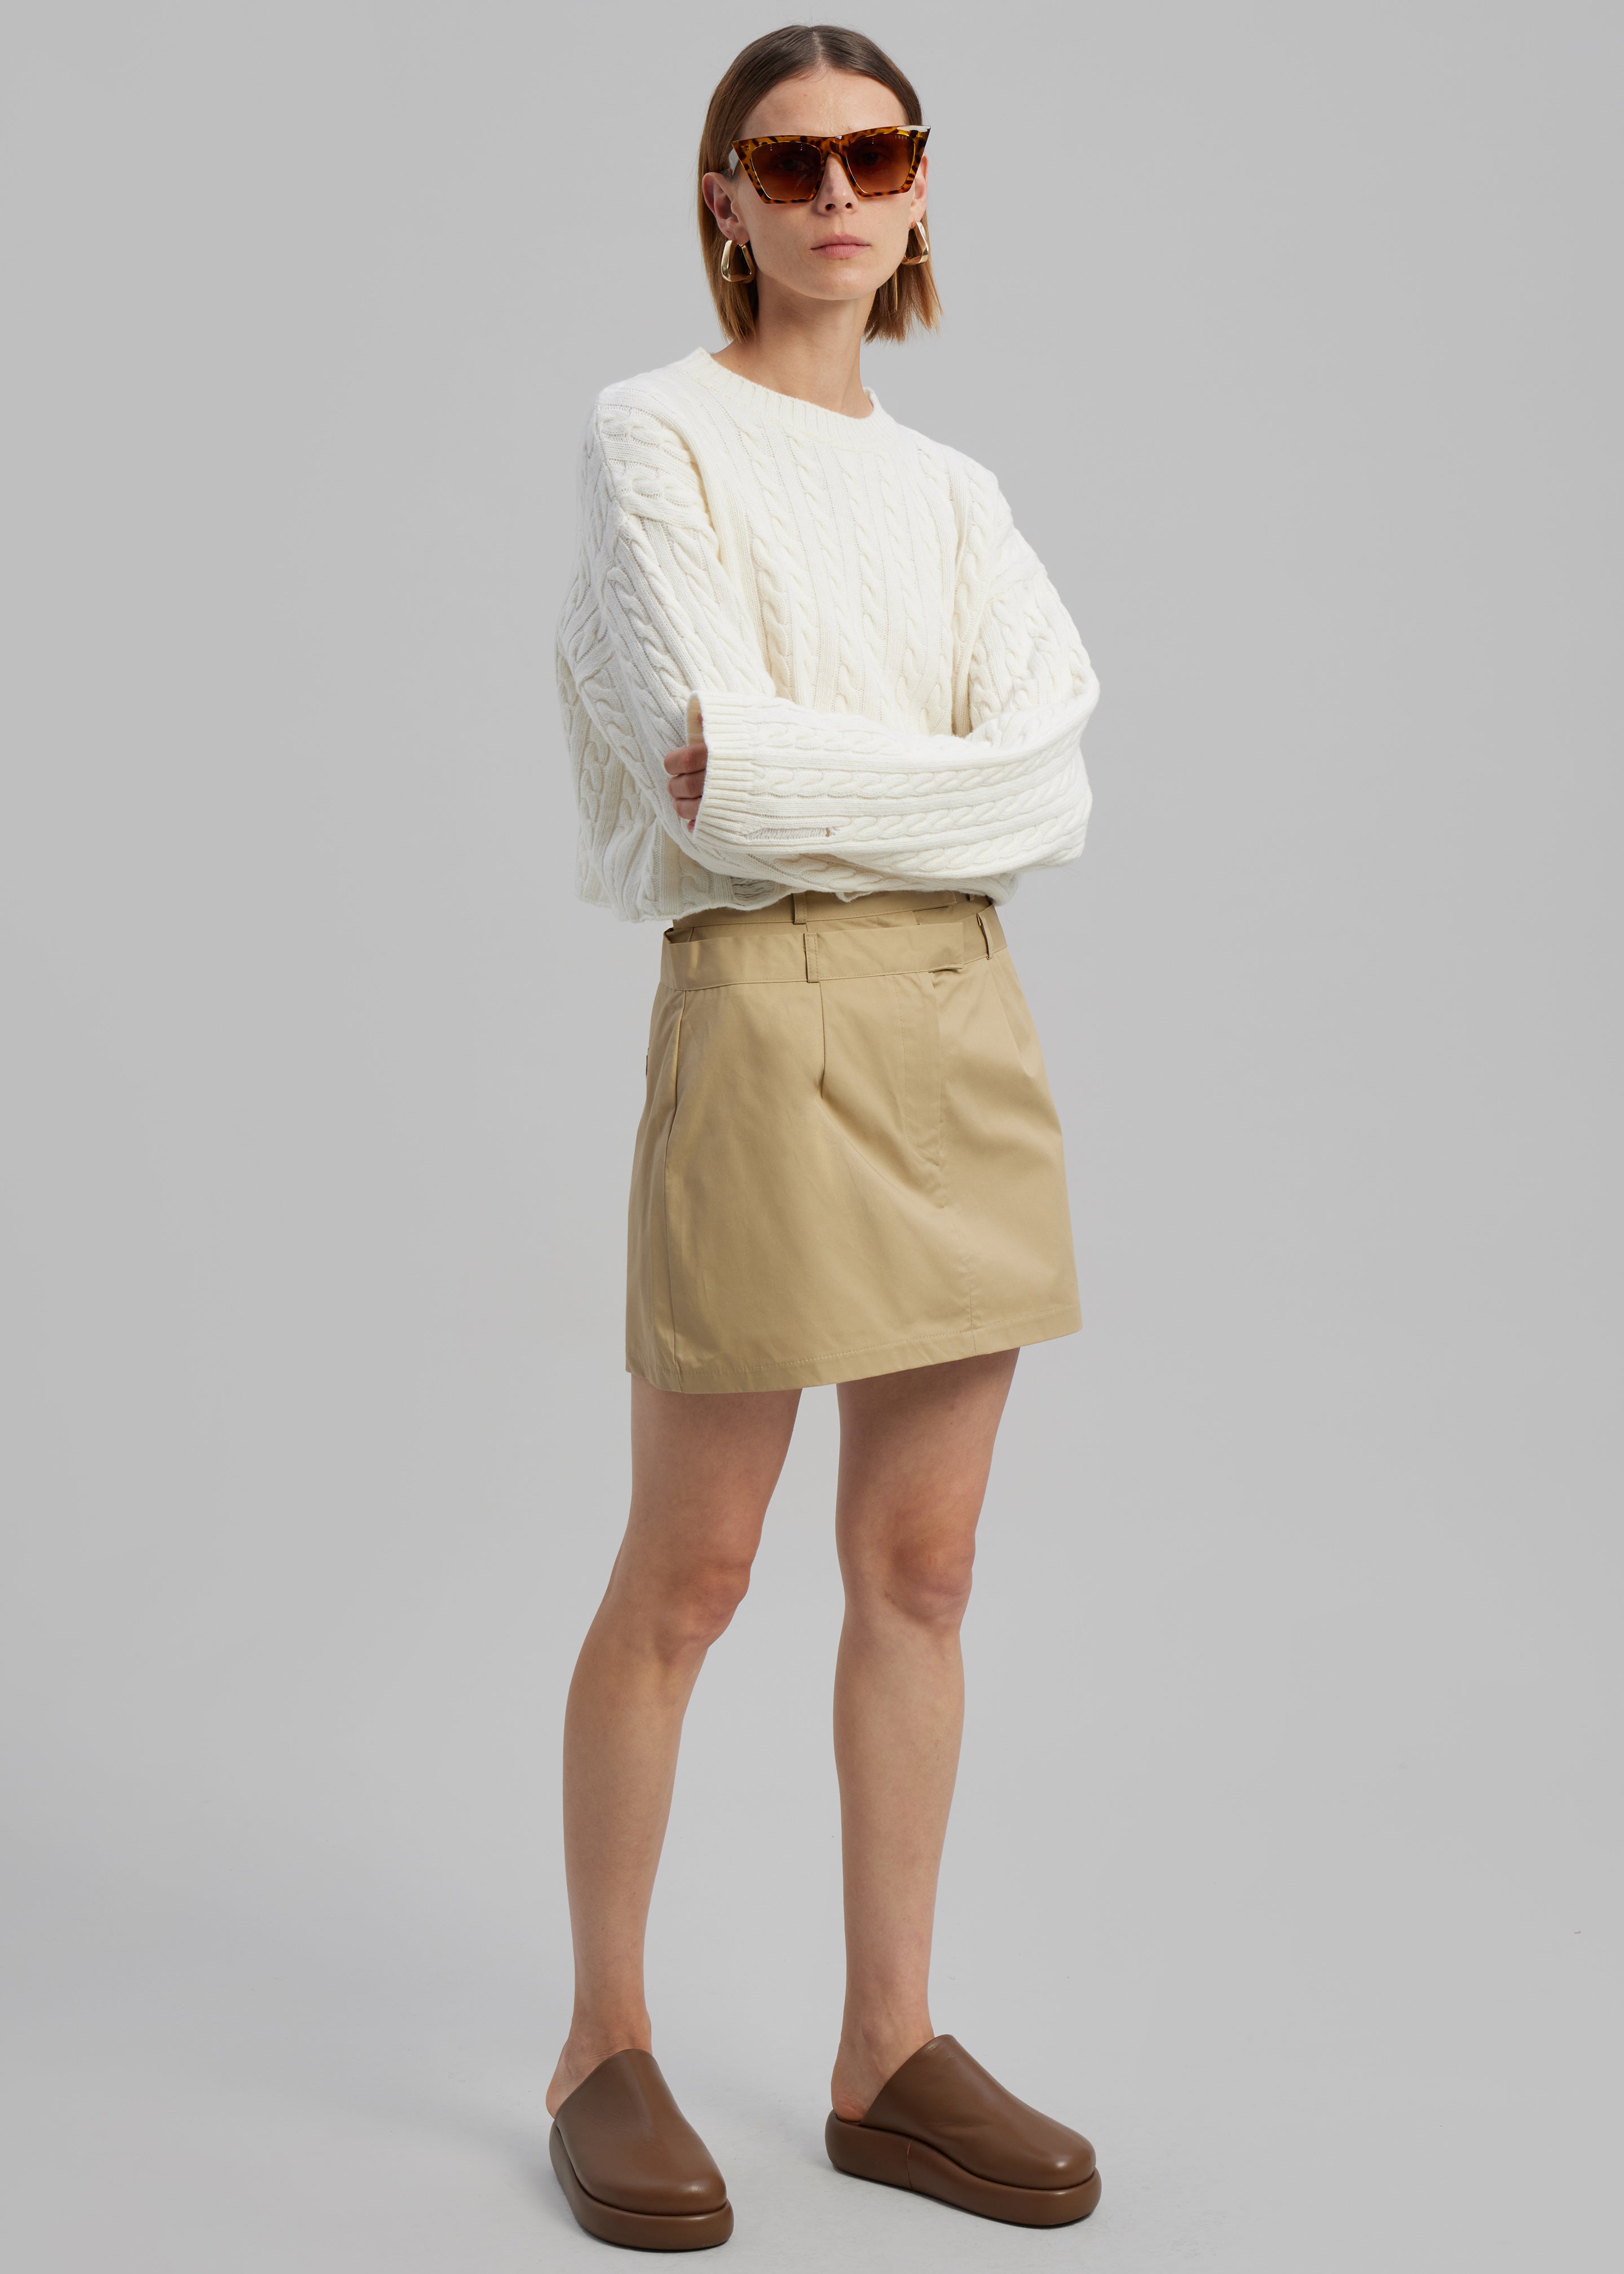 Anita Mini Skirt - Tan - 1